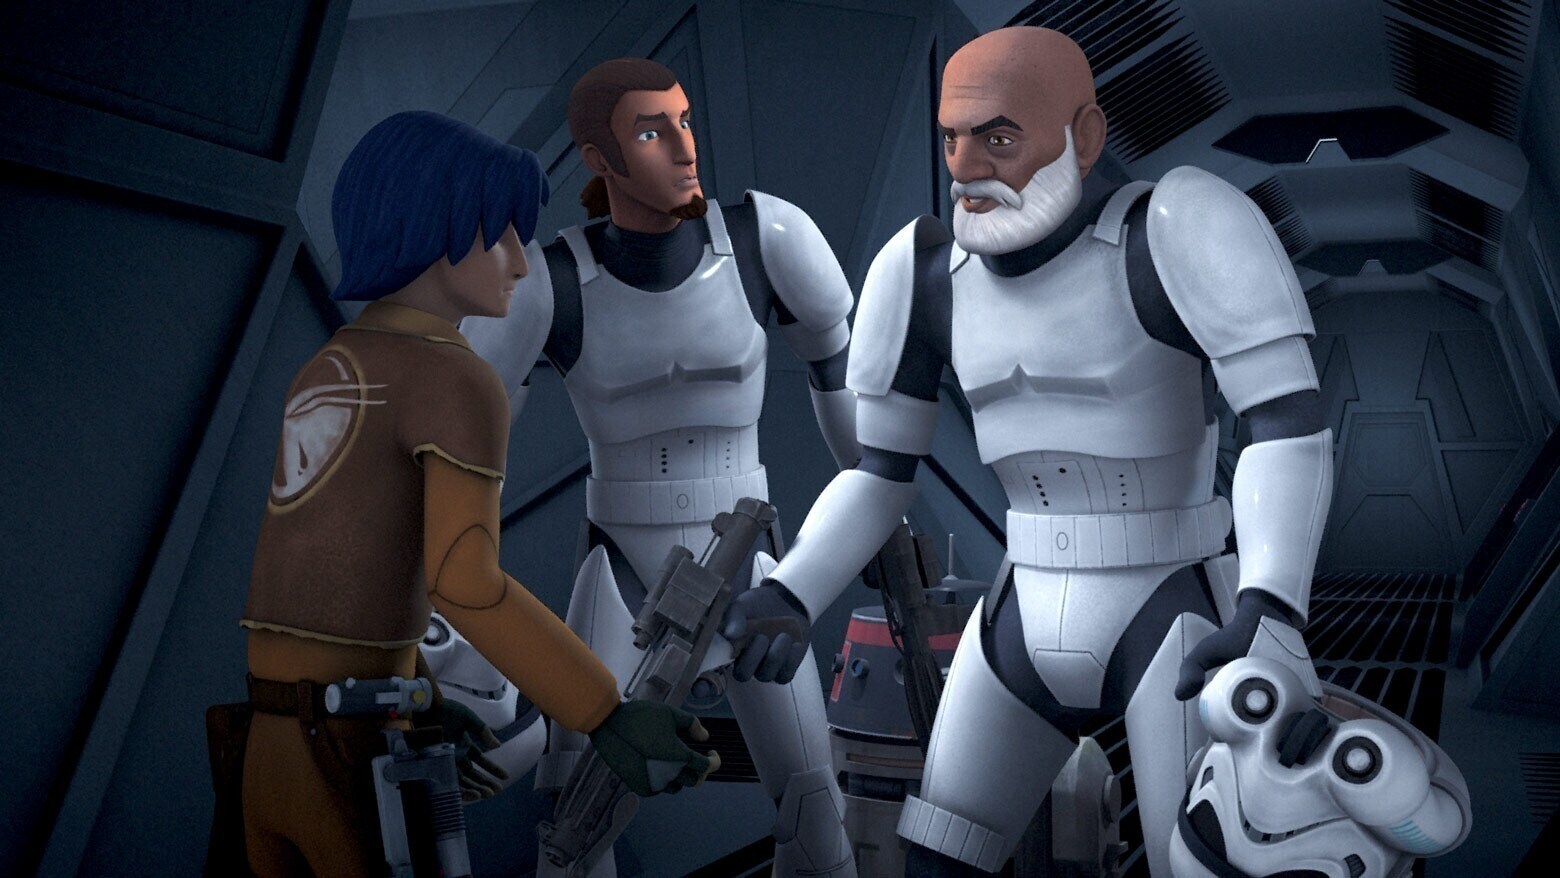 Rex and Kanan (wearing Stormtrooper armor) talking to Ezra